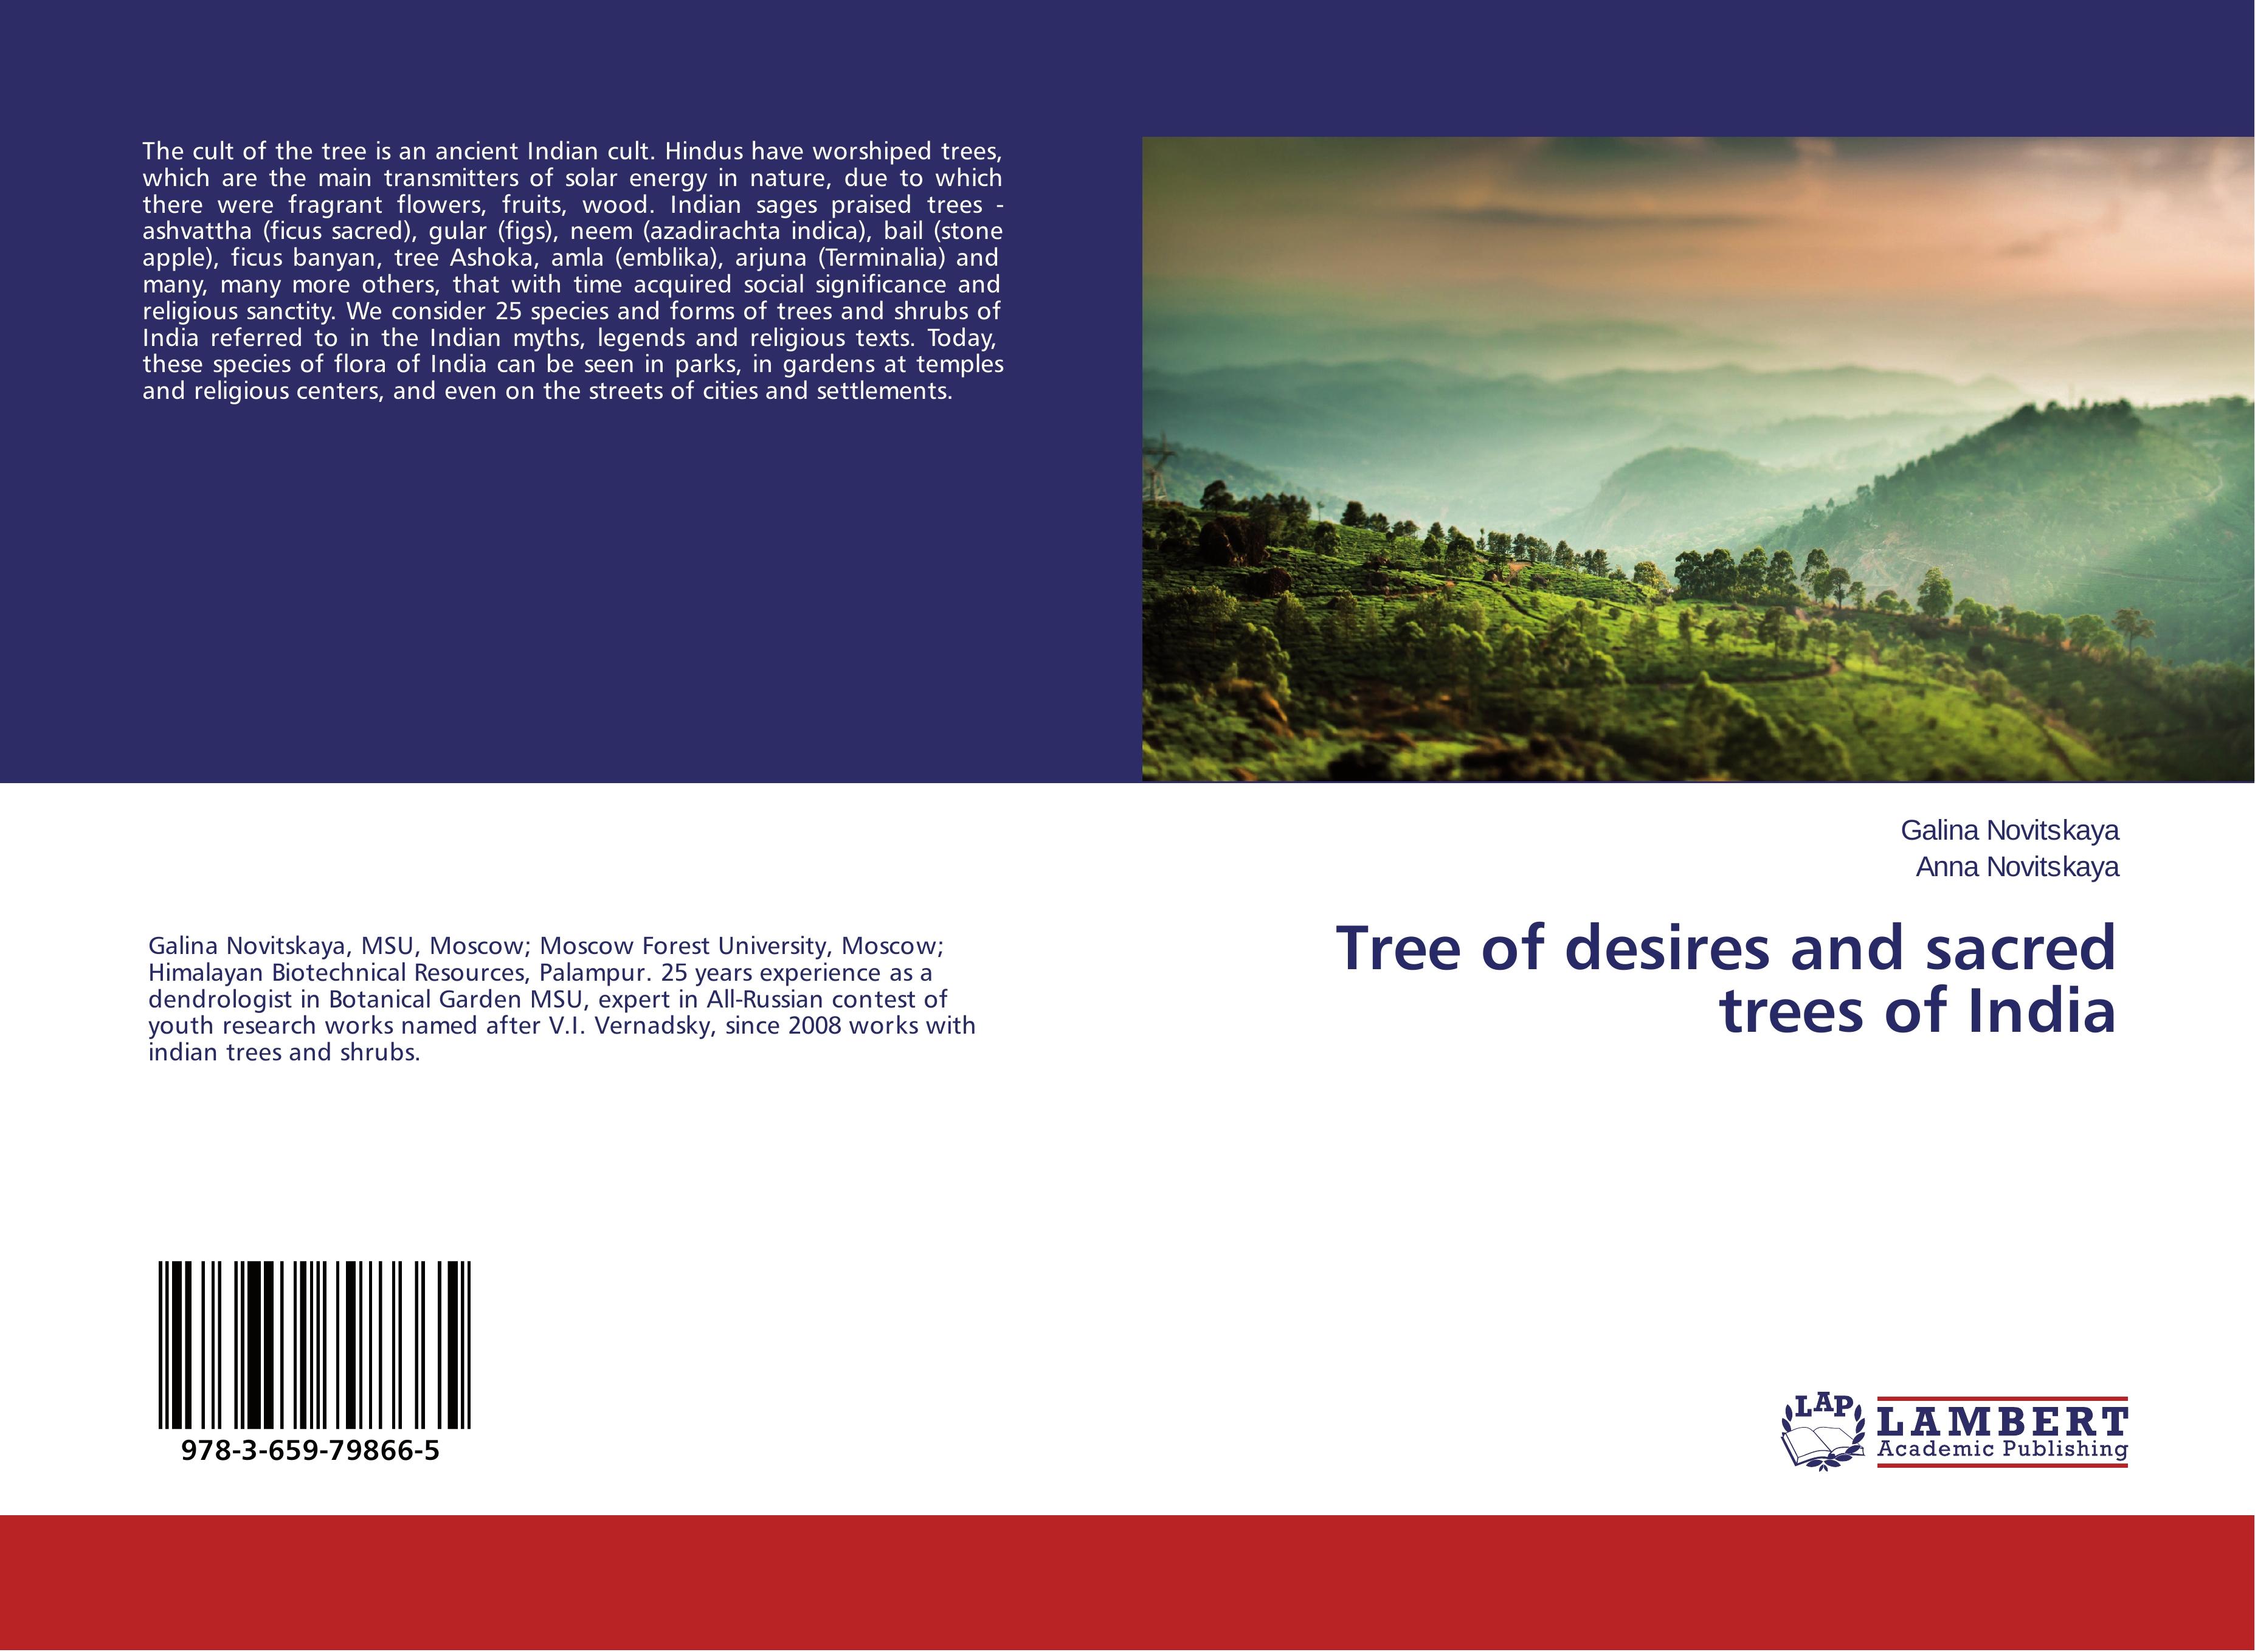 Tree of desires and sacred trees of India - Galina Novitskaya Anna Novitskaya